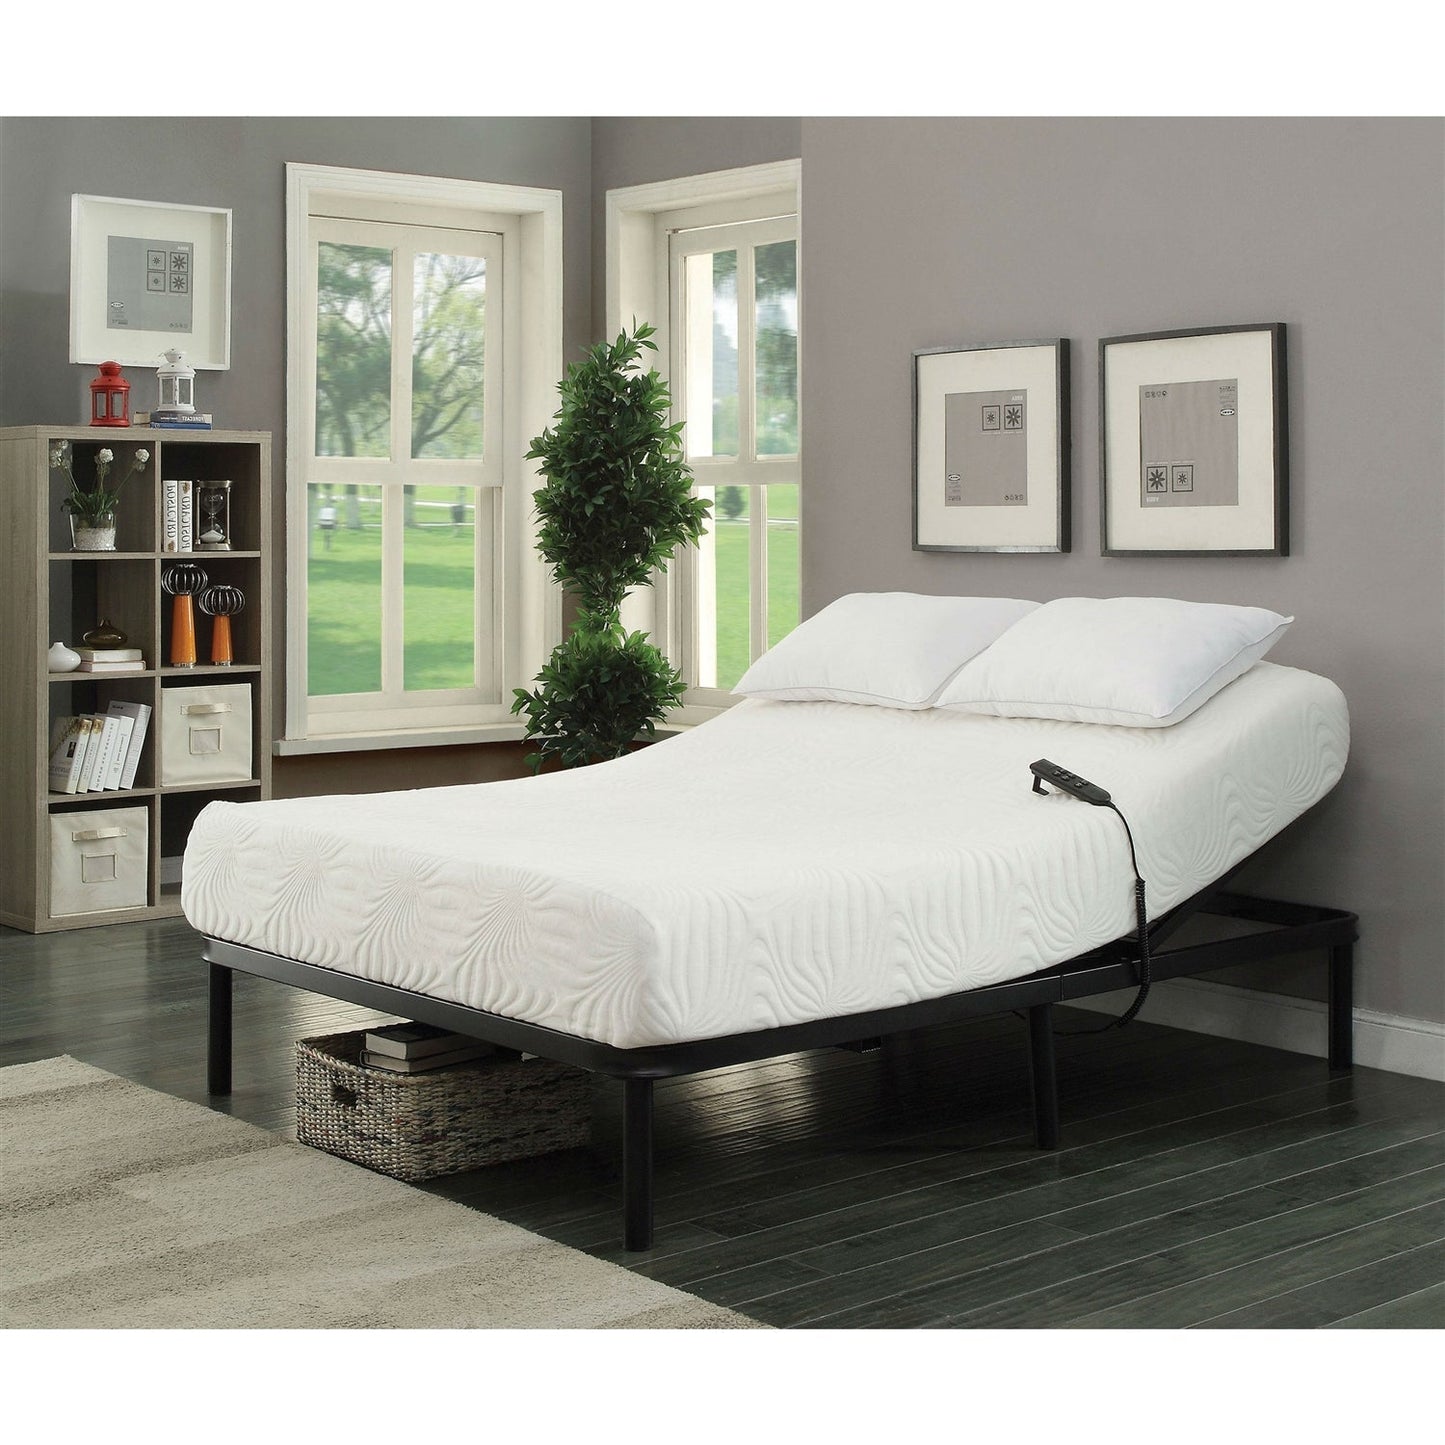 Bedroom > Bed Frames > Adjustable Beds - Full Size Sturdy Black Metal Adjustable Bed Base With Remote